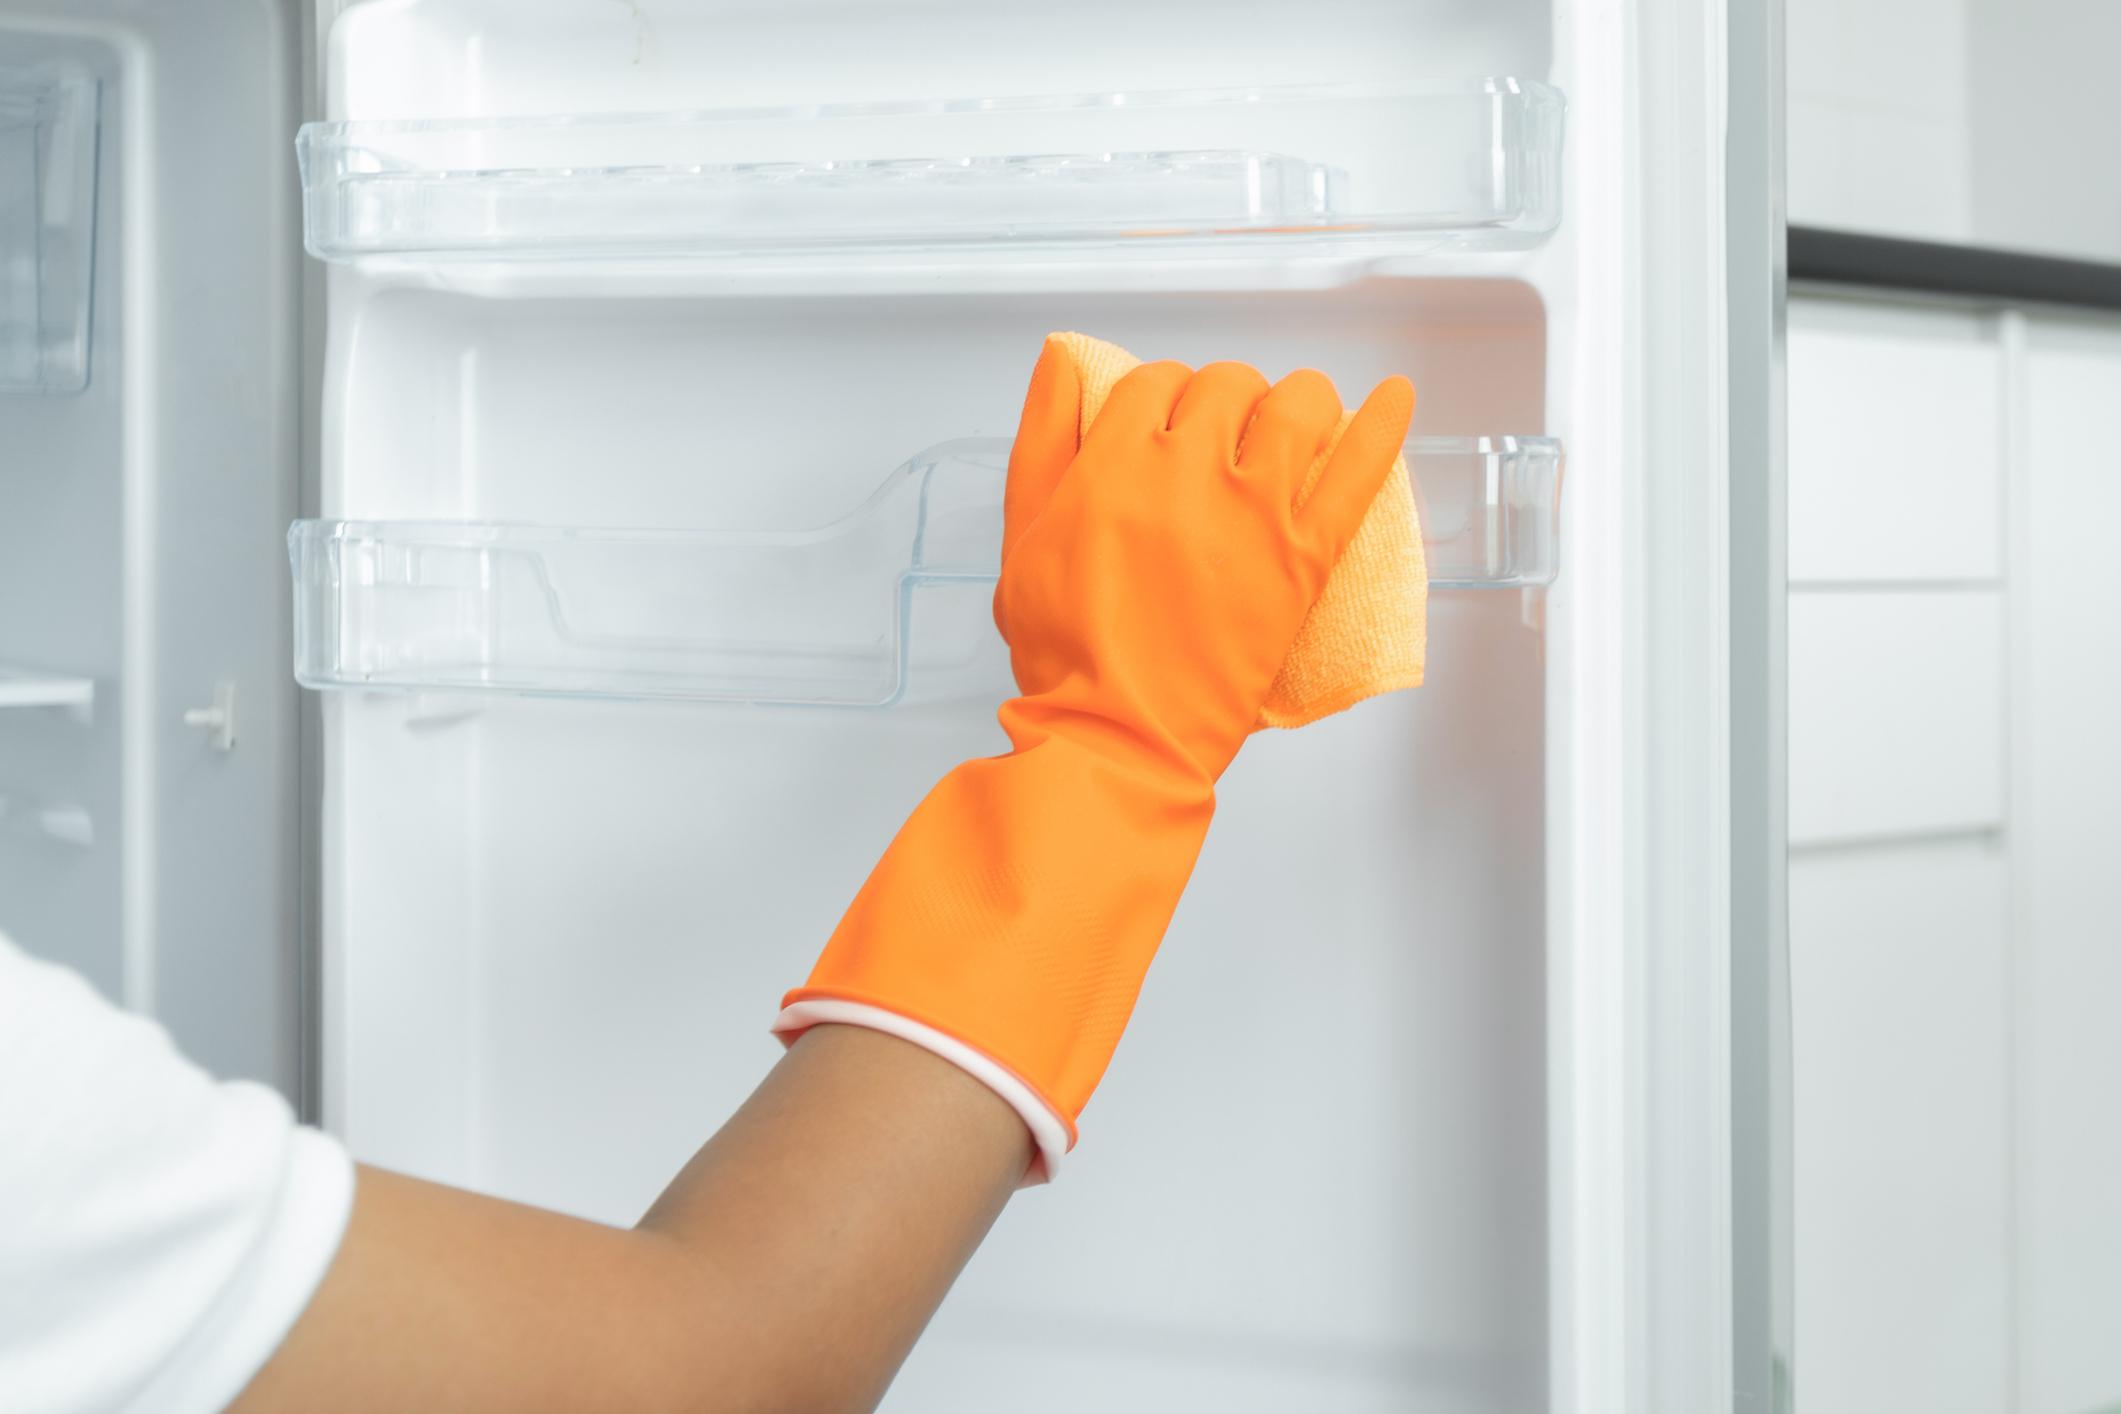 Is aan het huilen Factuur krokodil Hou het fris: 11 tips voor een propere koelkast - Libelle Lekker